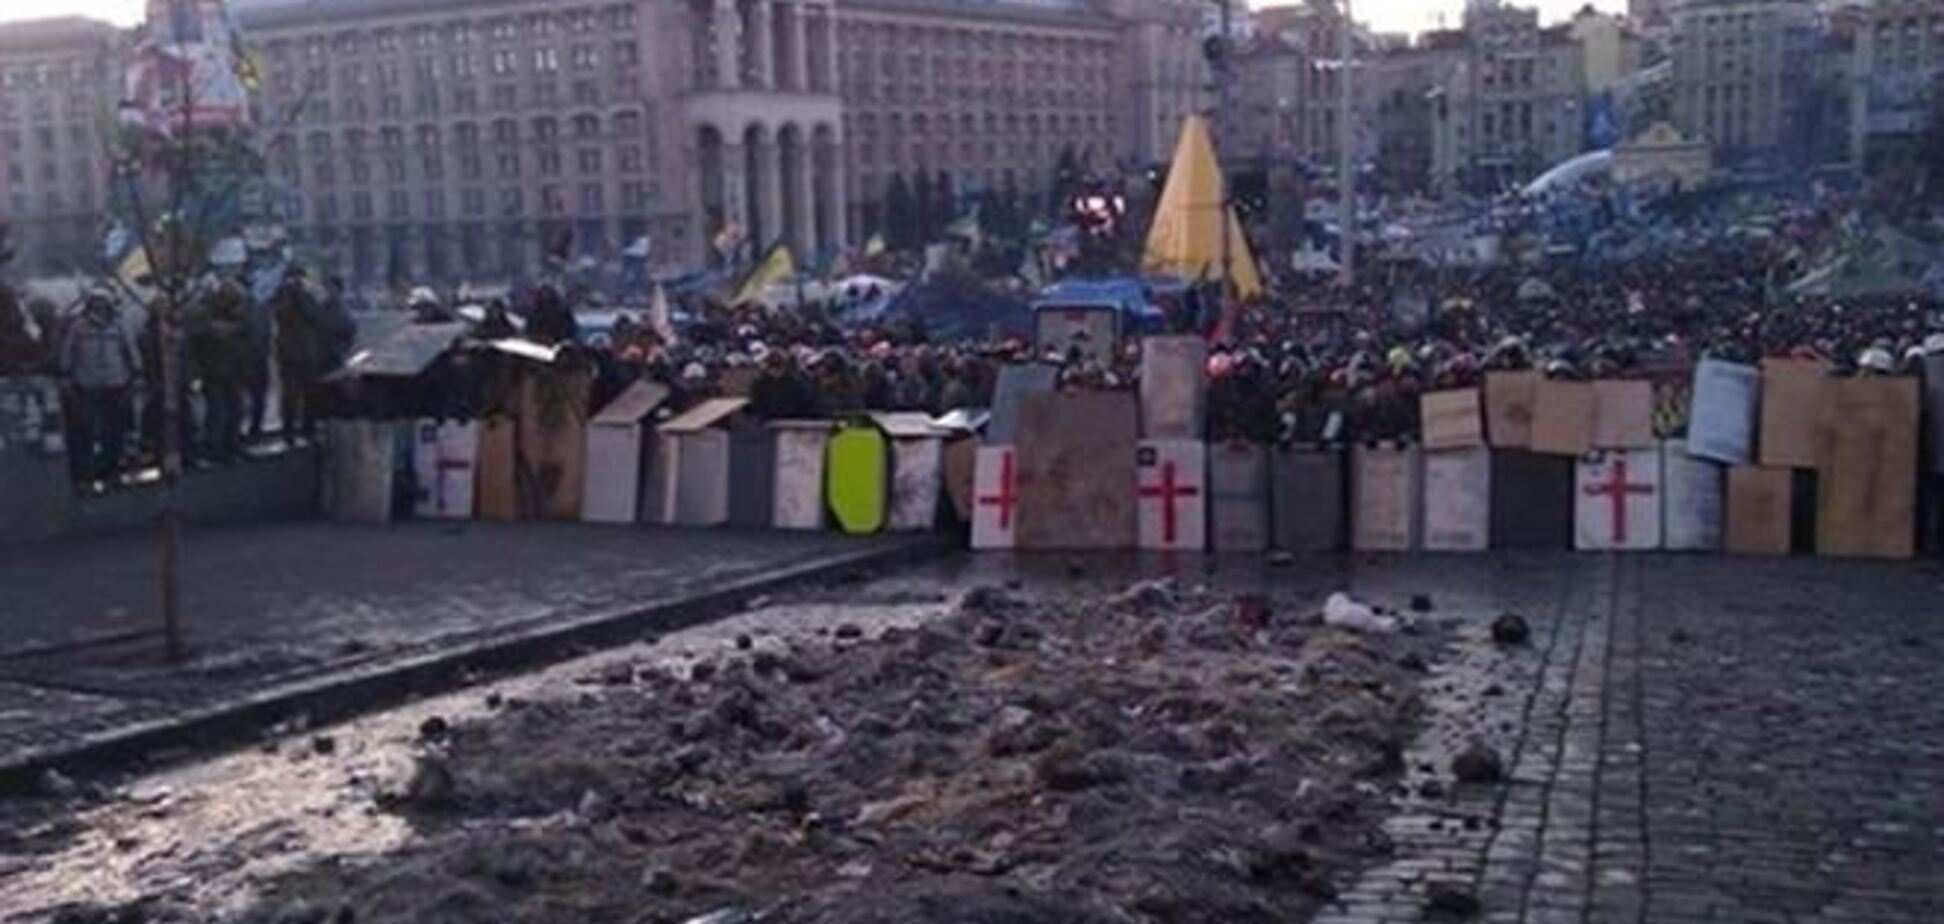 На Майдане около 20 тыс. людей, обстановка относительно спокойная